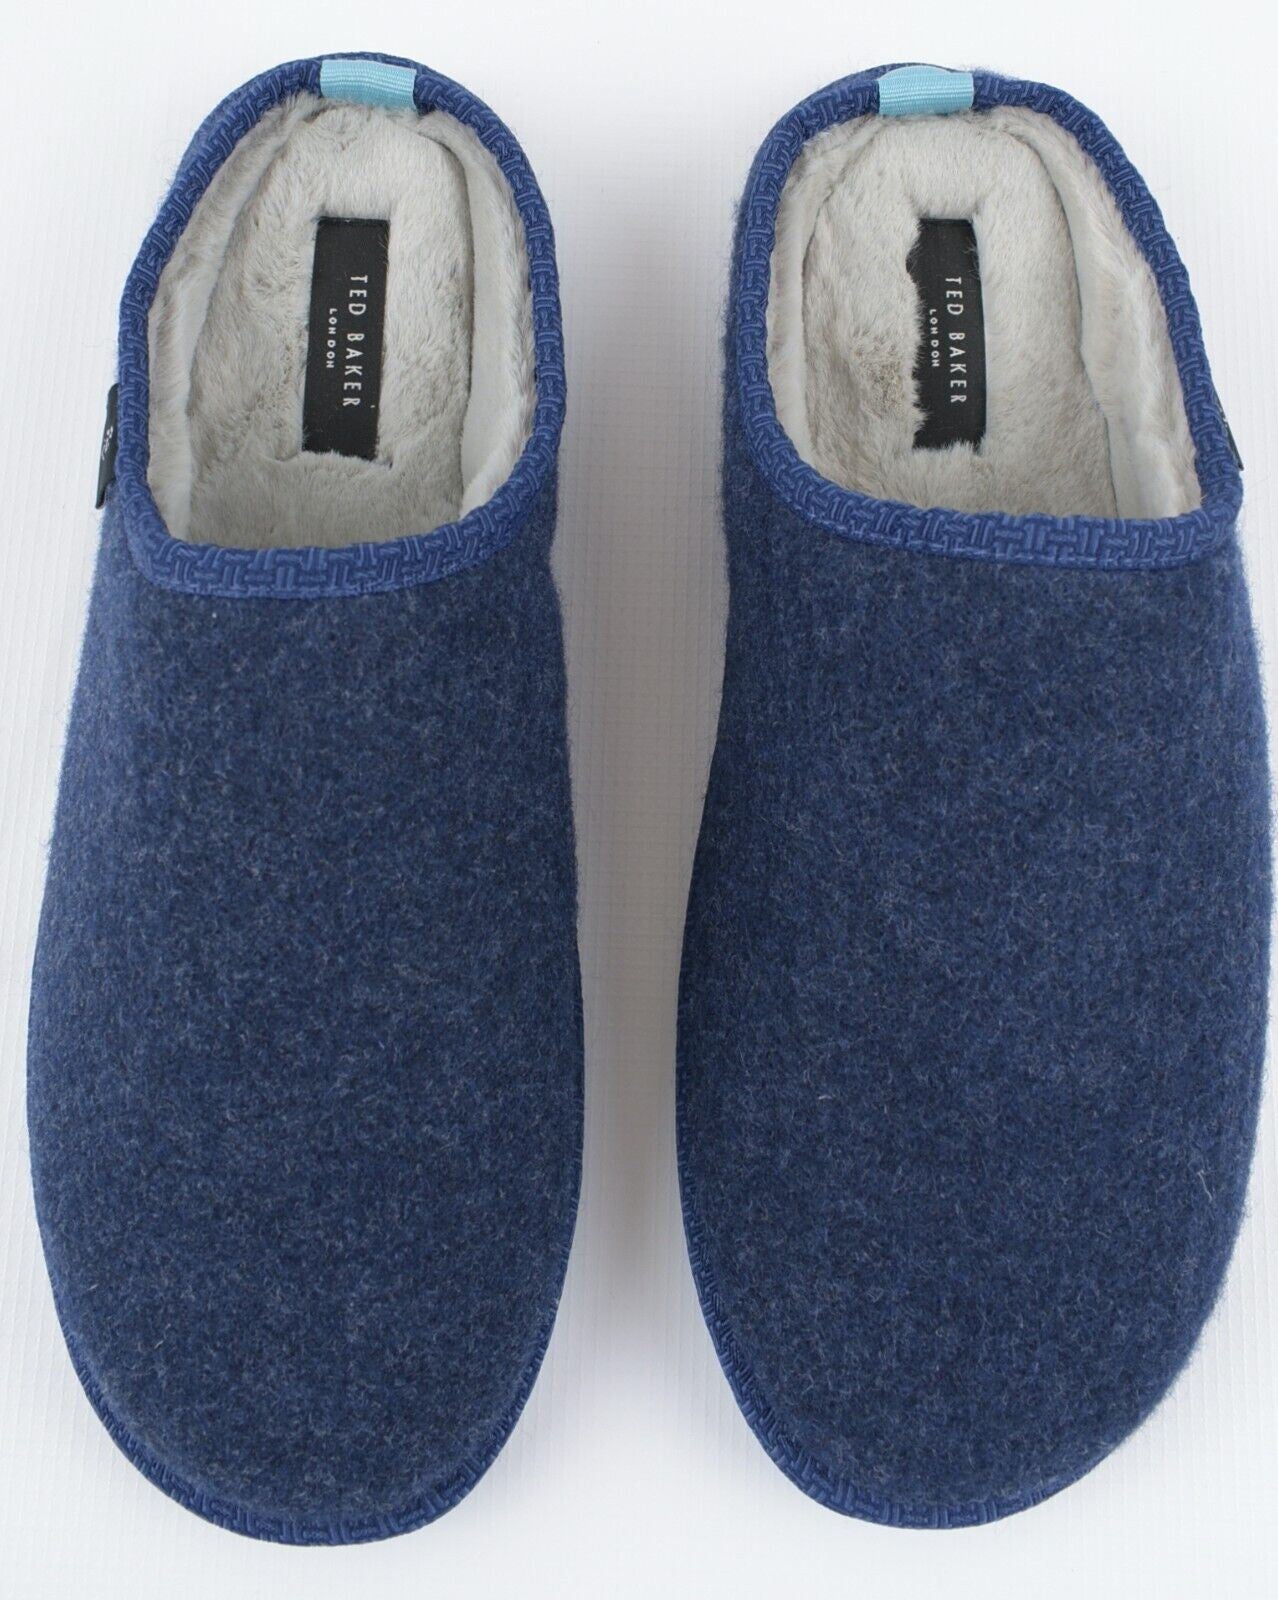 TED BAKER Men's SIMONN Felt Mulet Sole Slippers, Blue, size UK 10 /EU 44